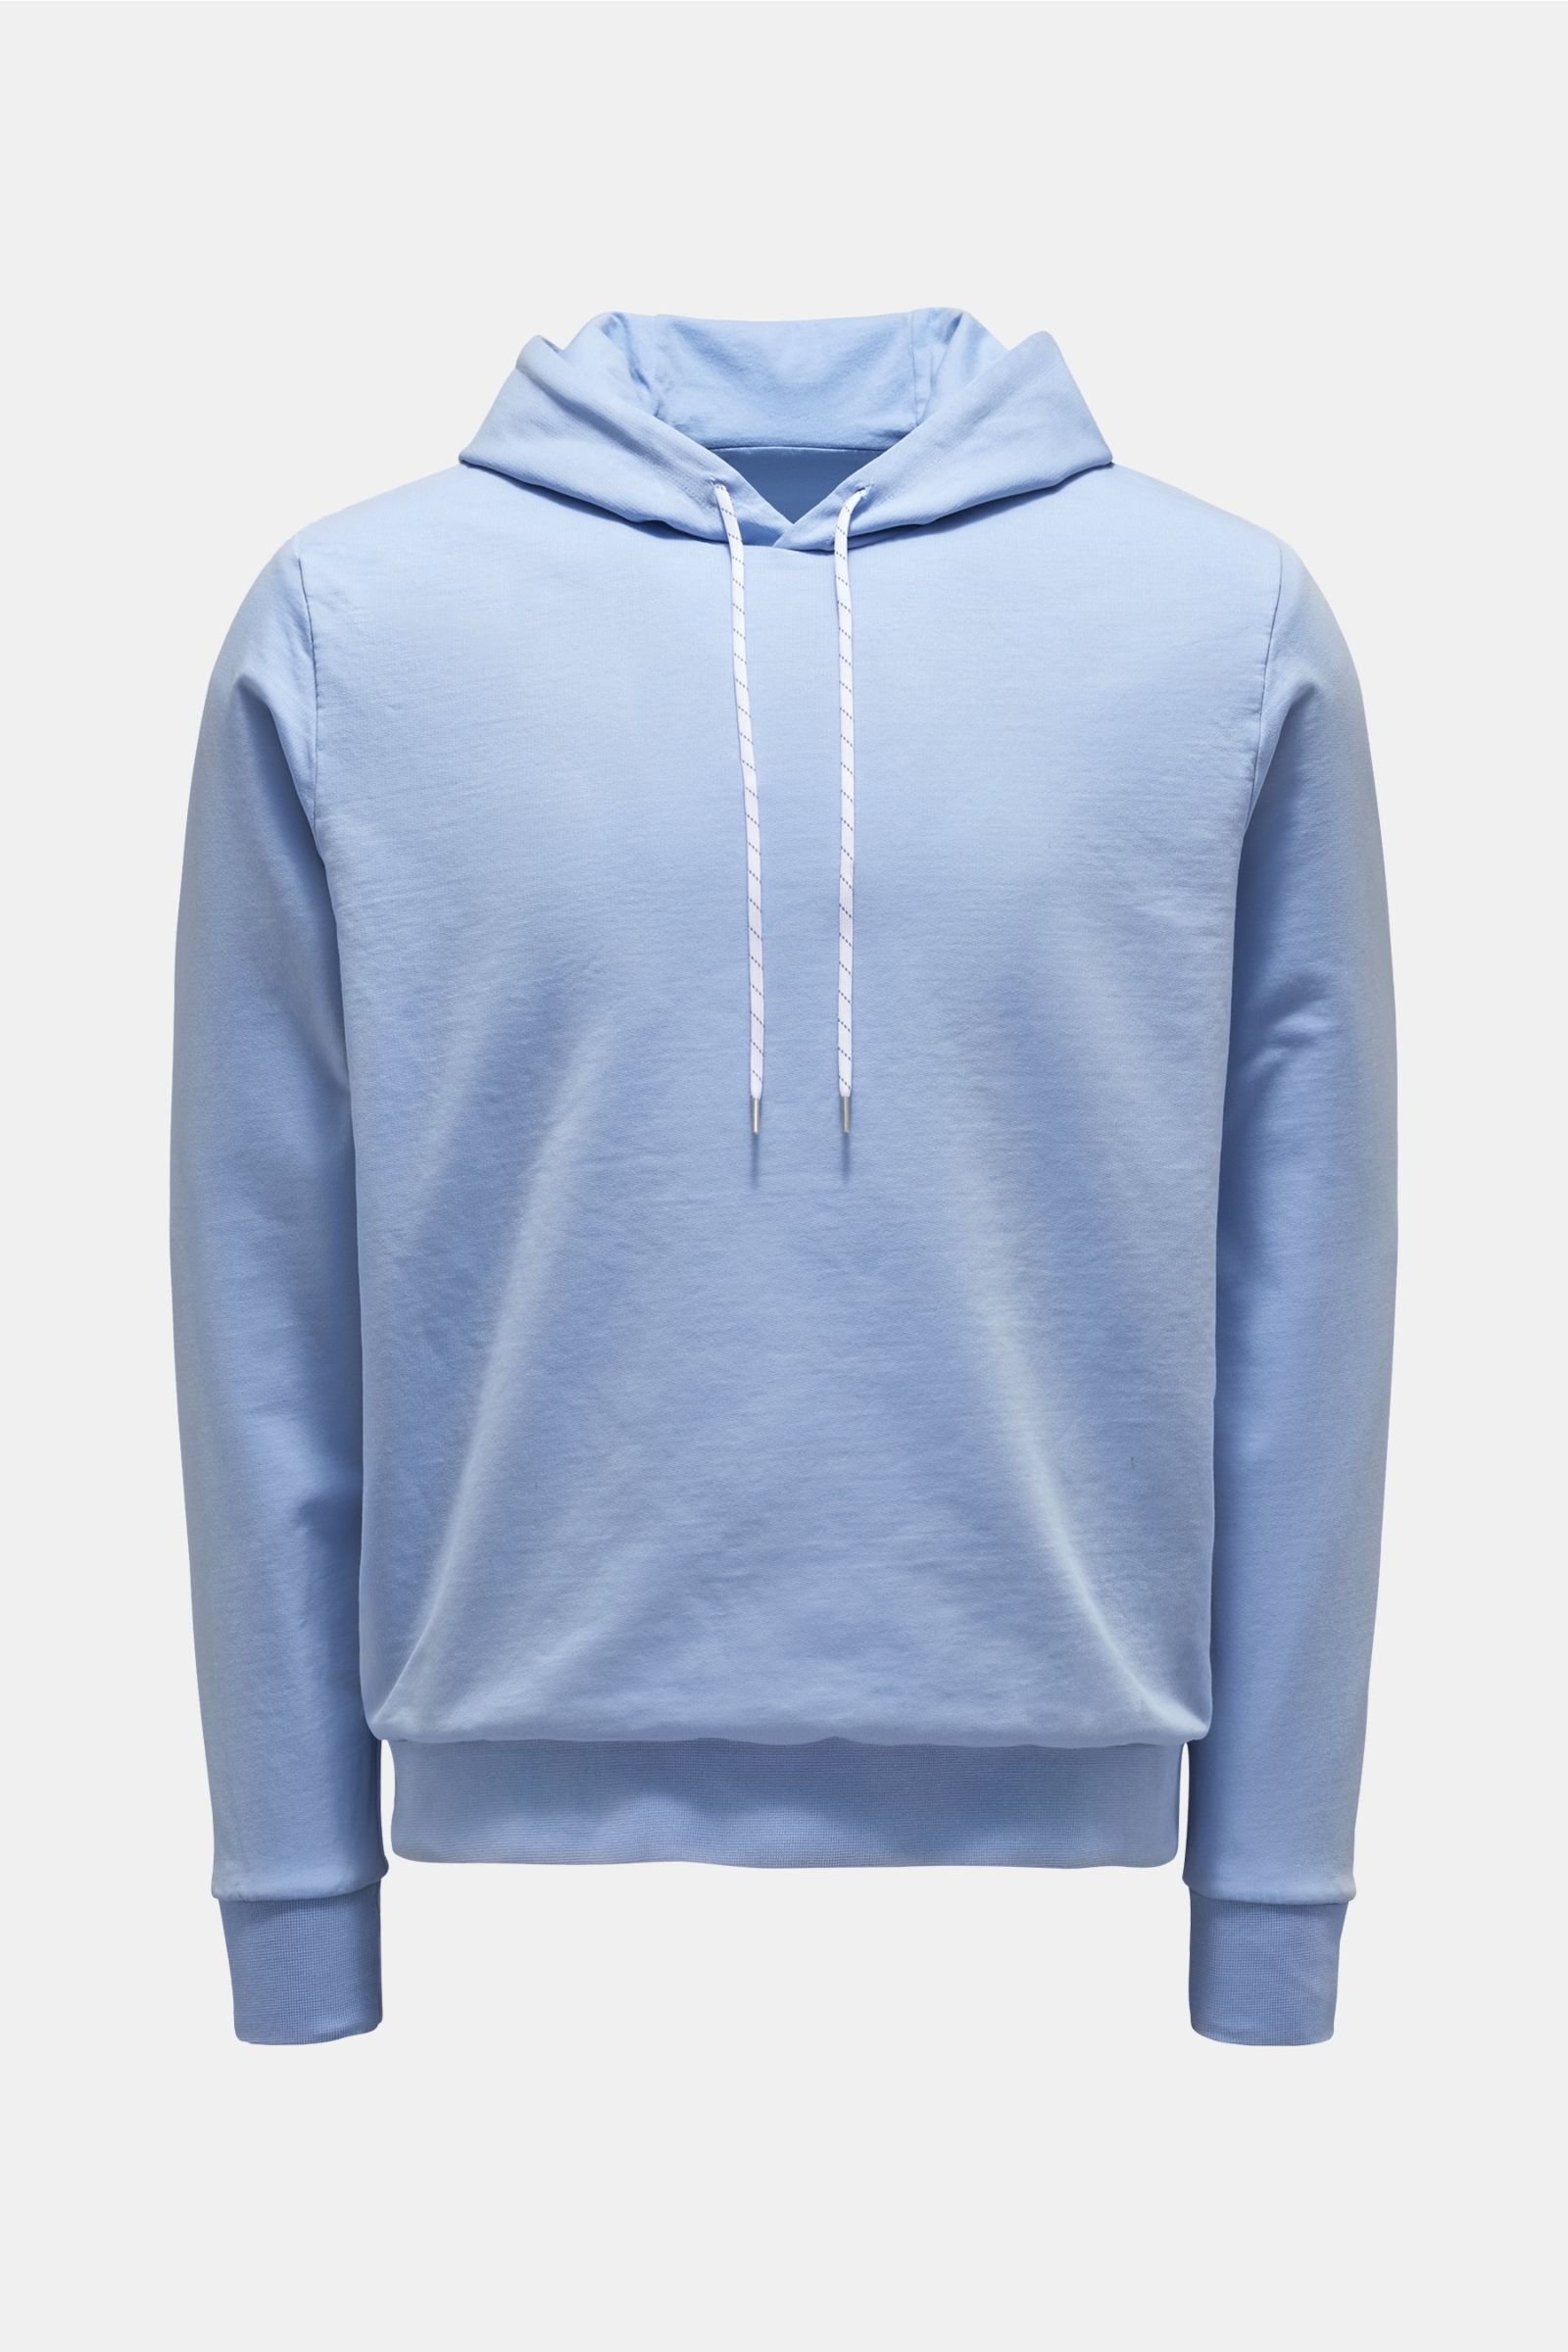 Reversible-hooded jumper light blue